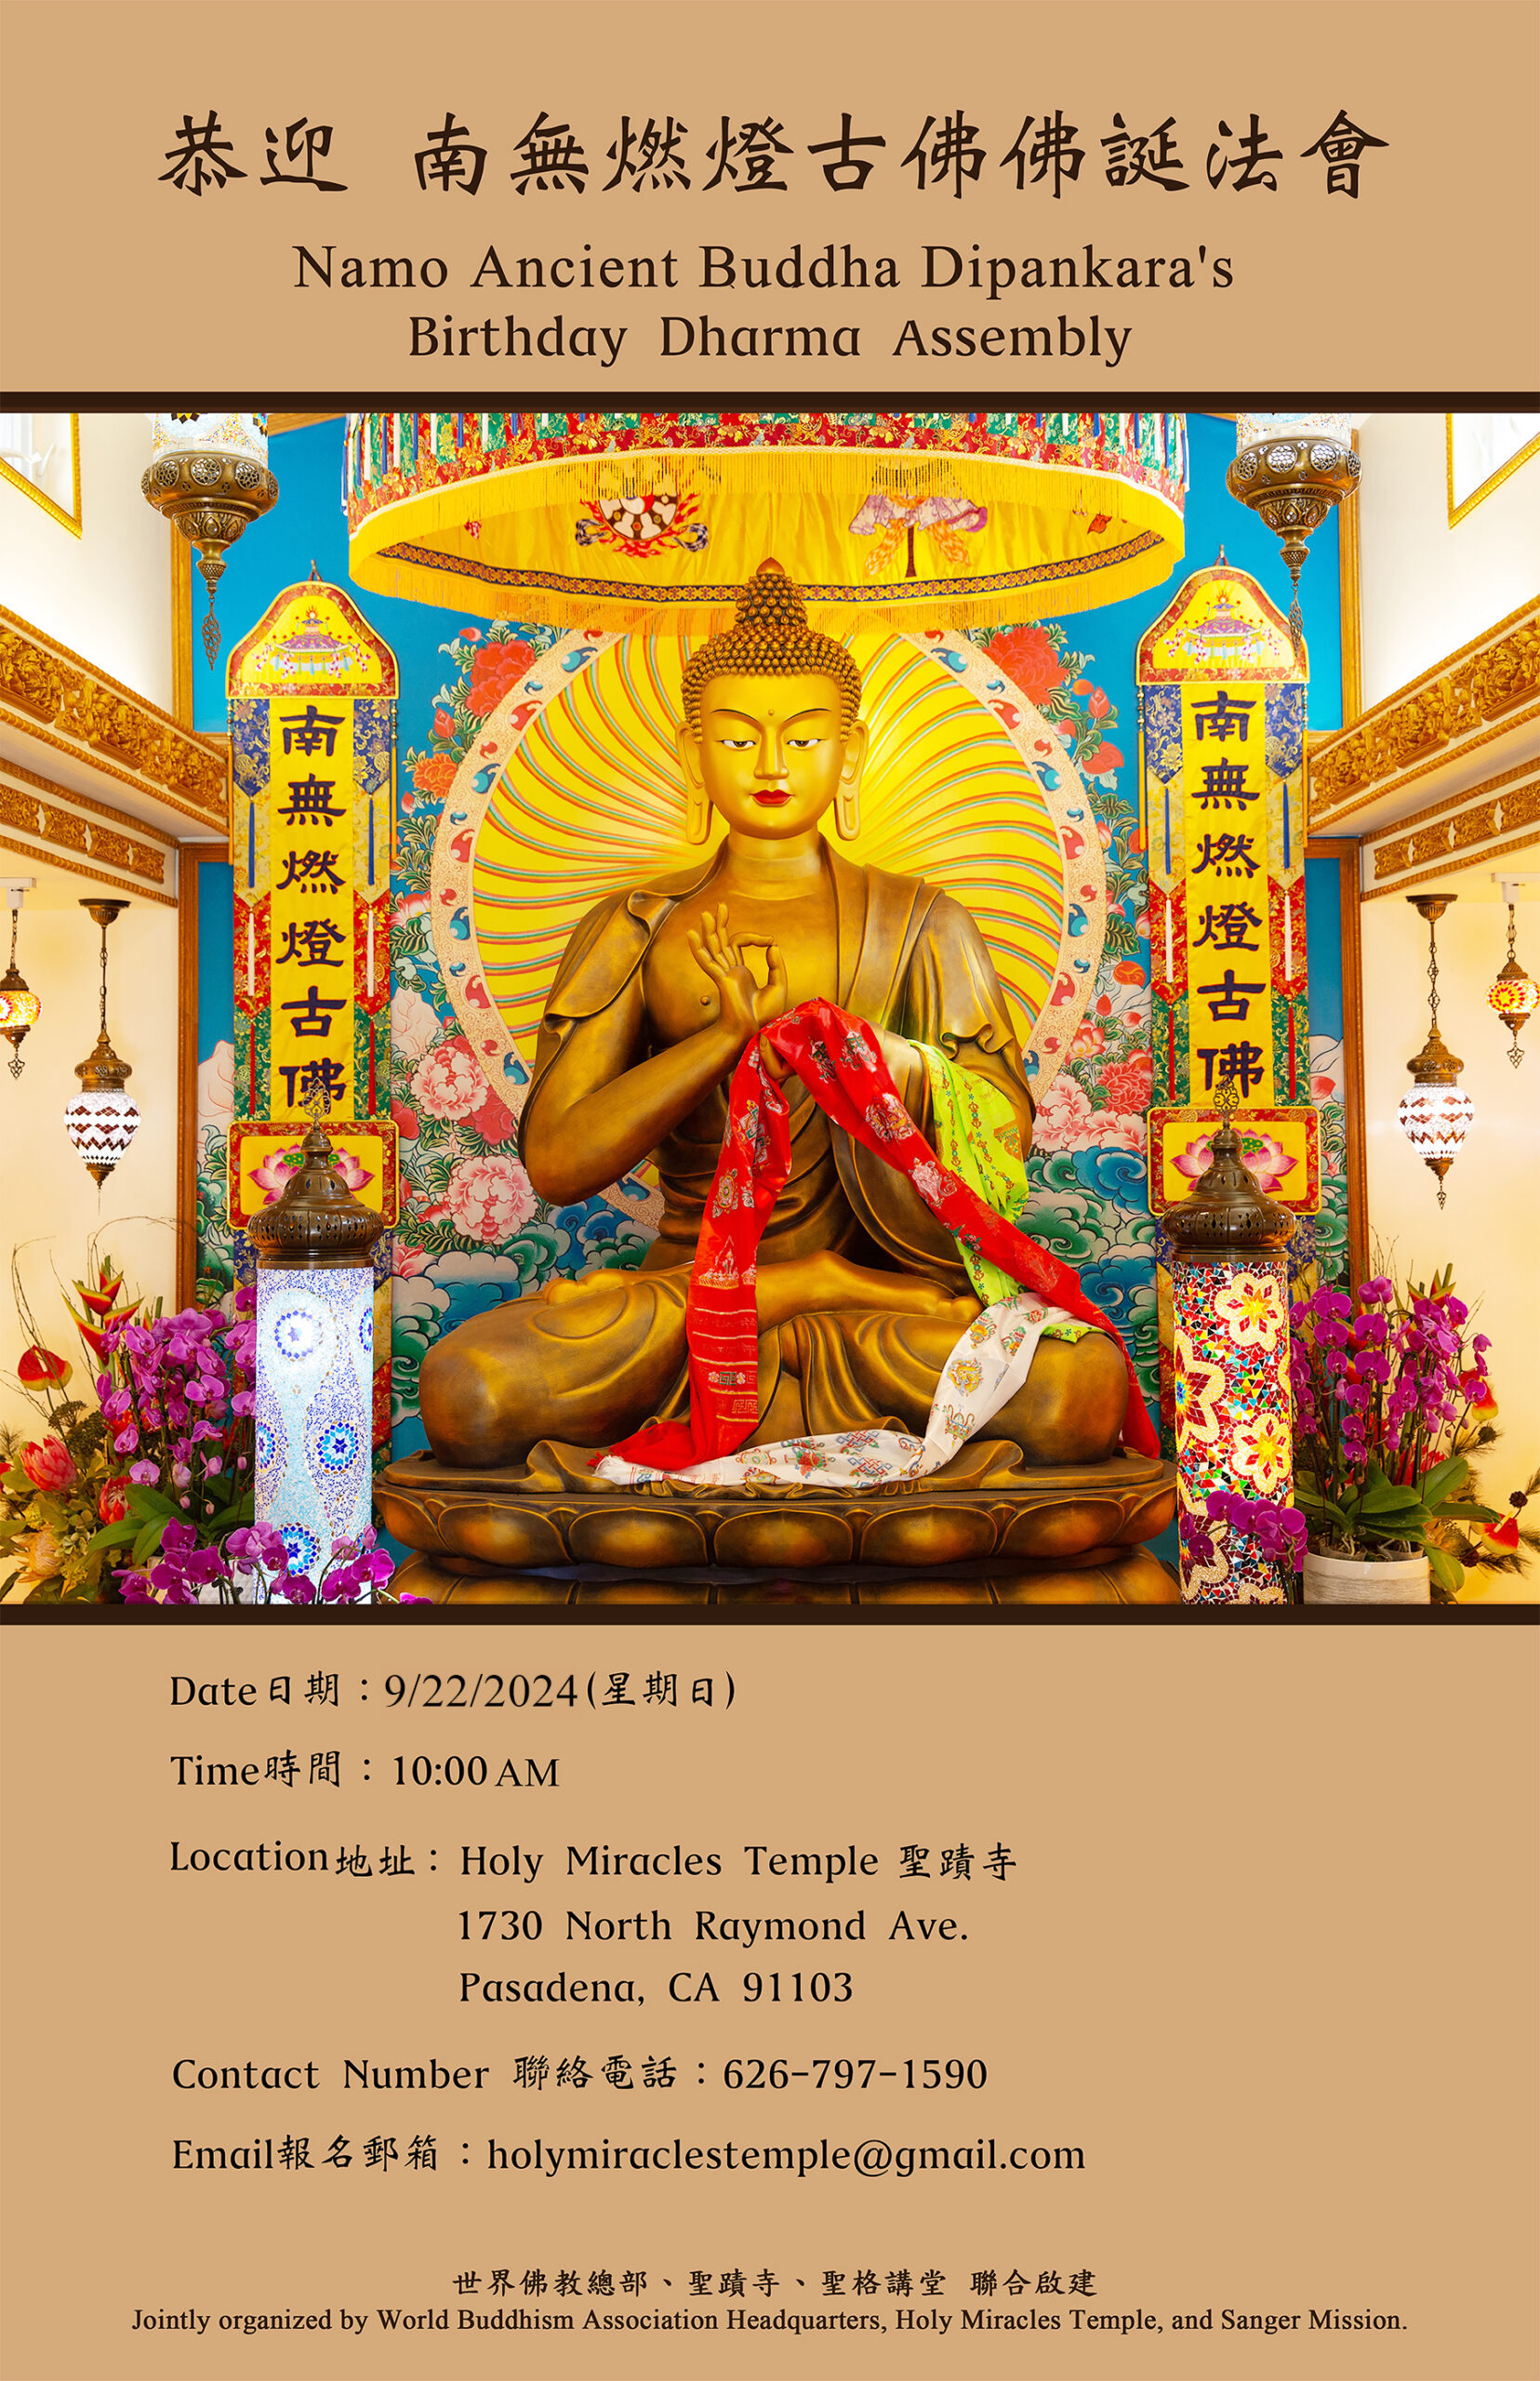 Dharma Assembly to Respectfully Honor the Holy Birthday of Namo Ancient Buddha Dipankara